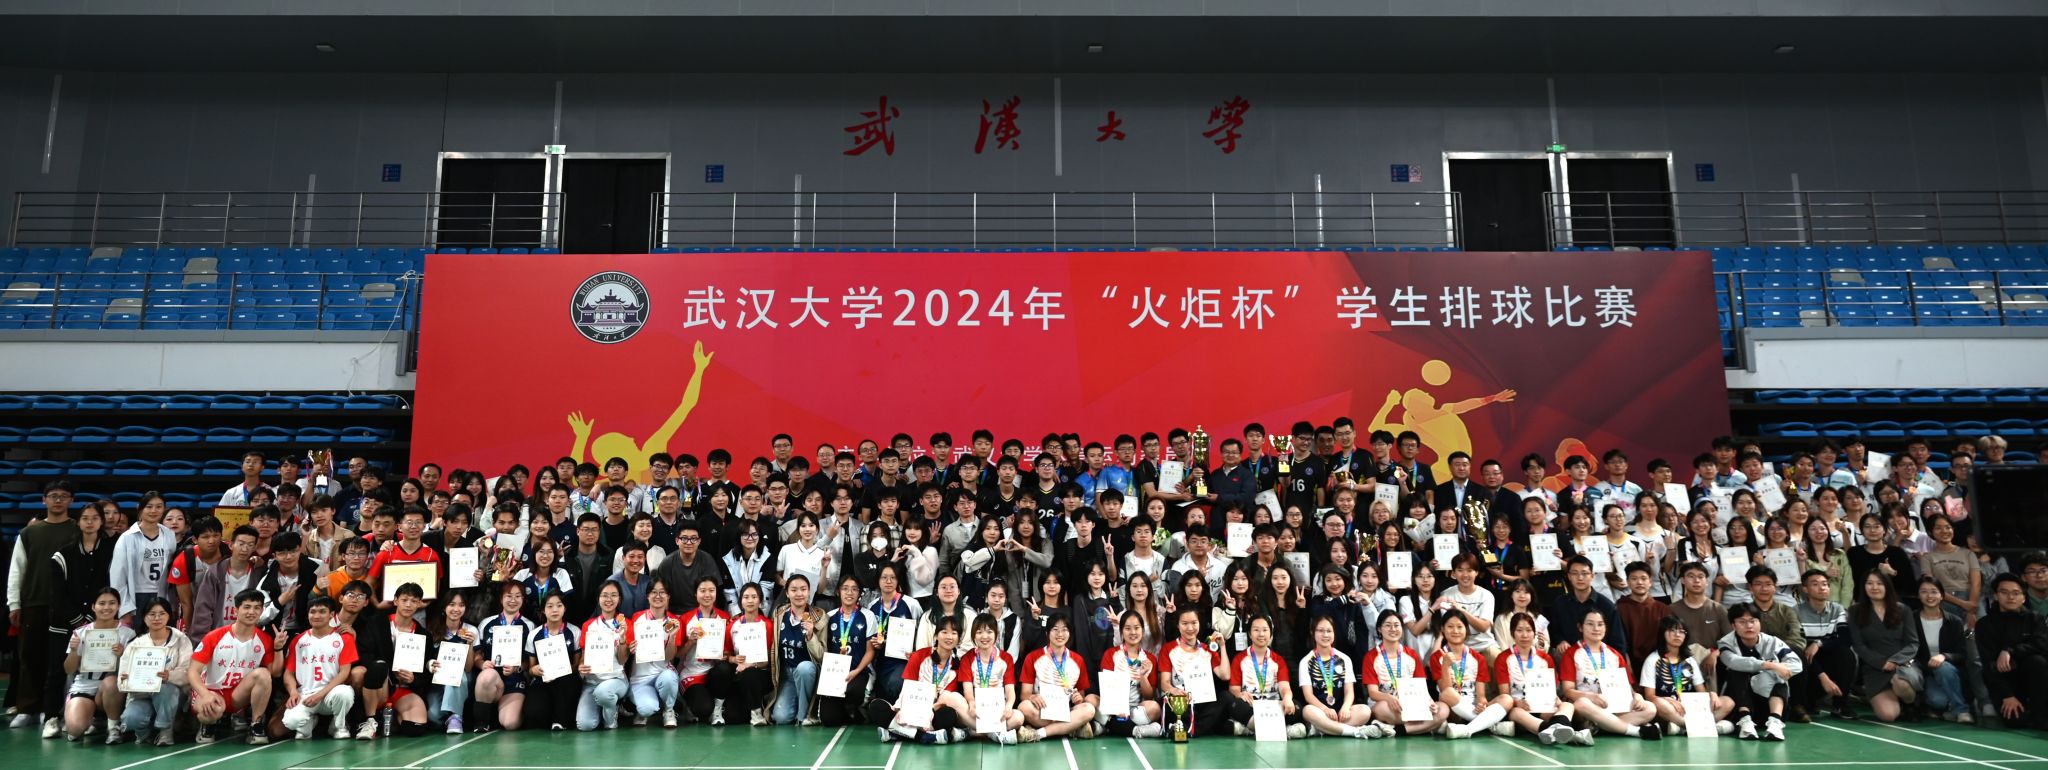 武汉大学2024年火炬杯排球赛圆满落幕